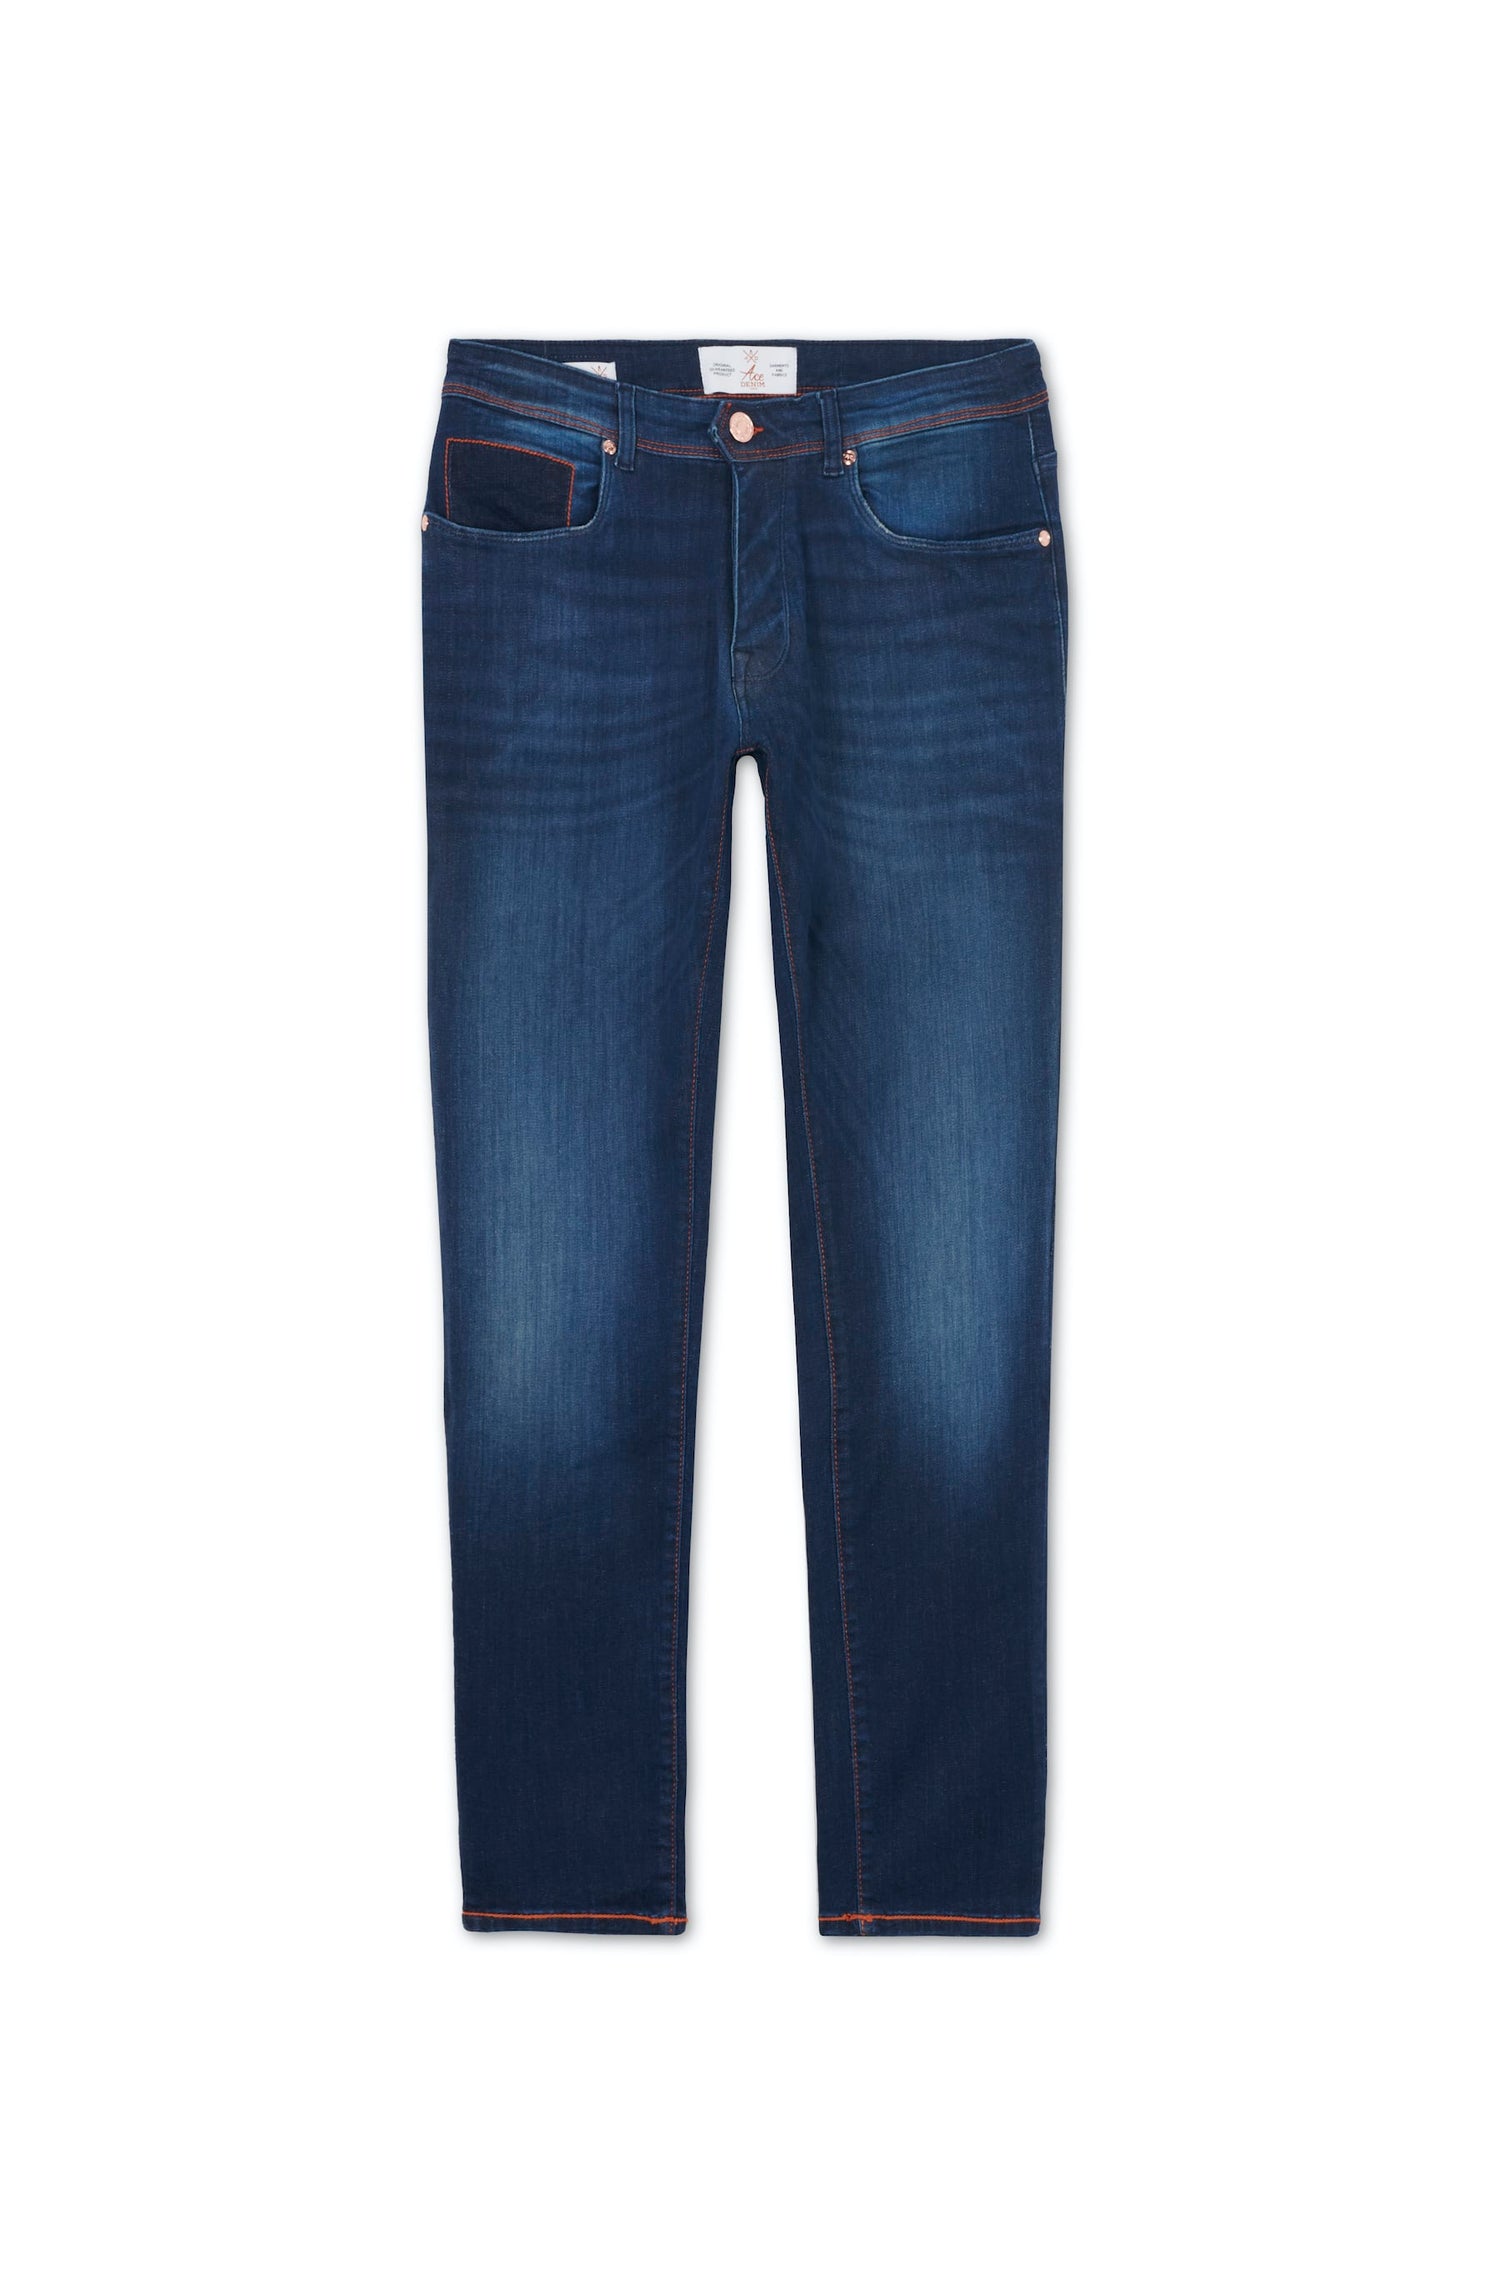 jeans homme coupe slim bleu foncé details orange